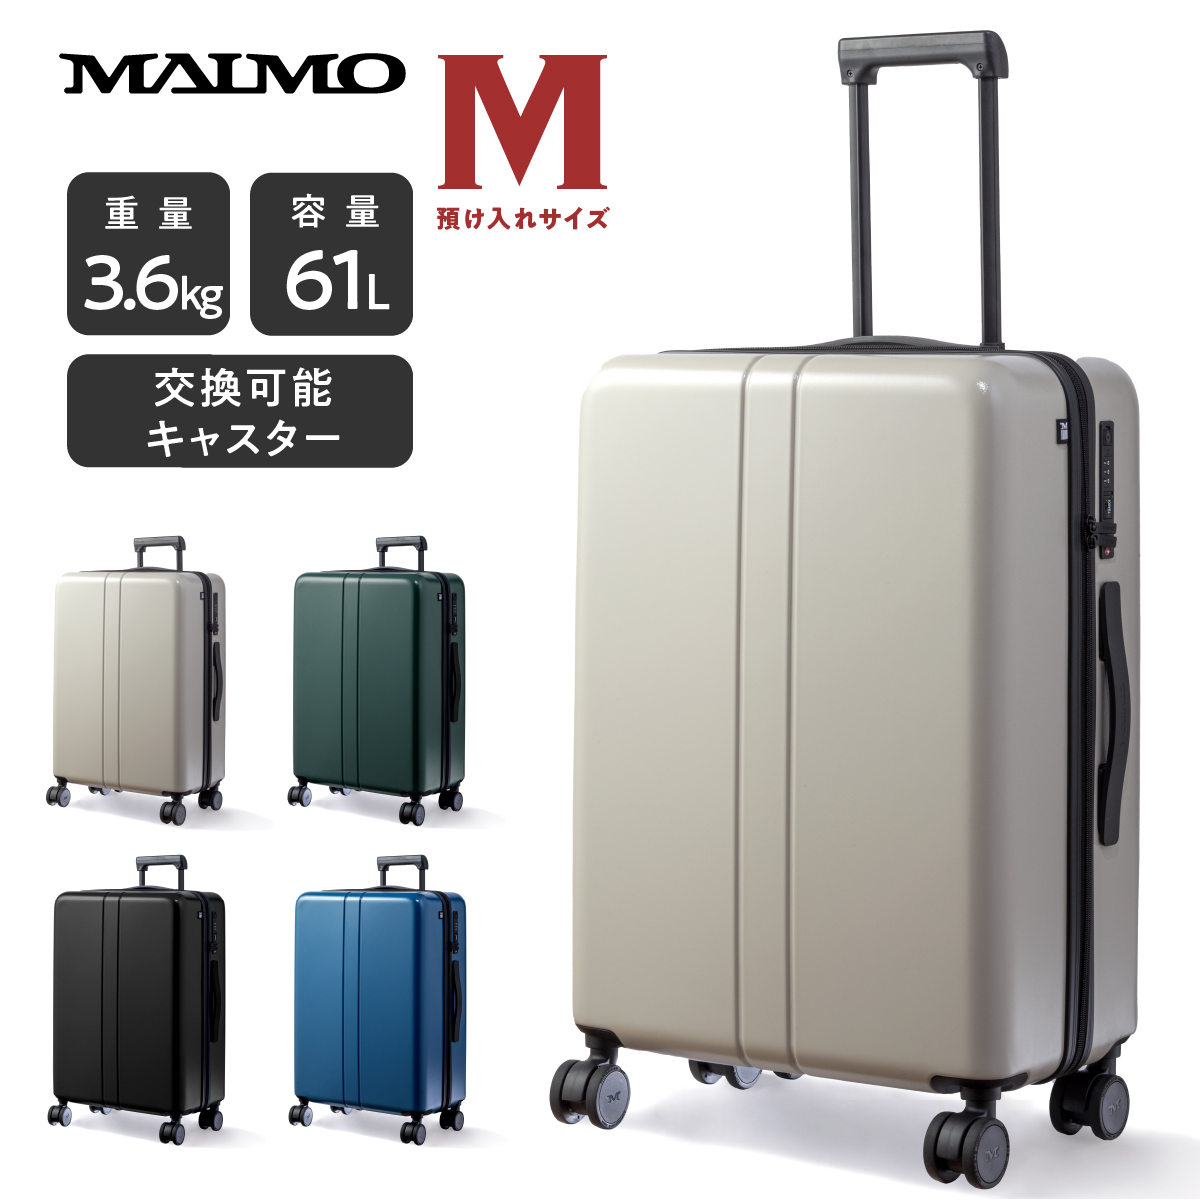 スーツケース キャリーケース MAIMO公式 キャリーバッグ Mサイズ 日本企業 超軽量 大容量 静音 スーツ ケース ダブルキャスター  最新セキュリティー